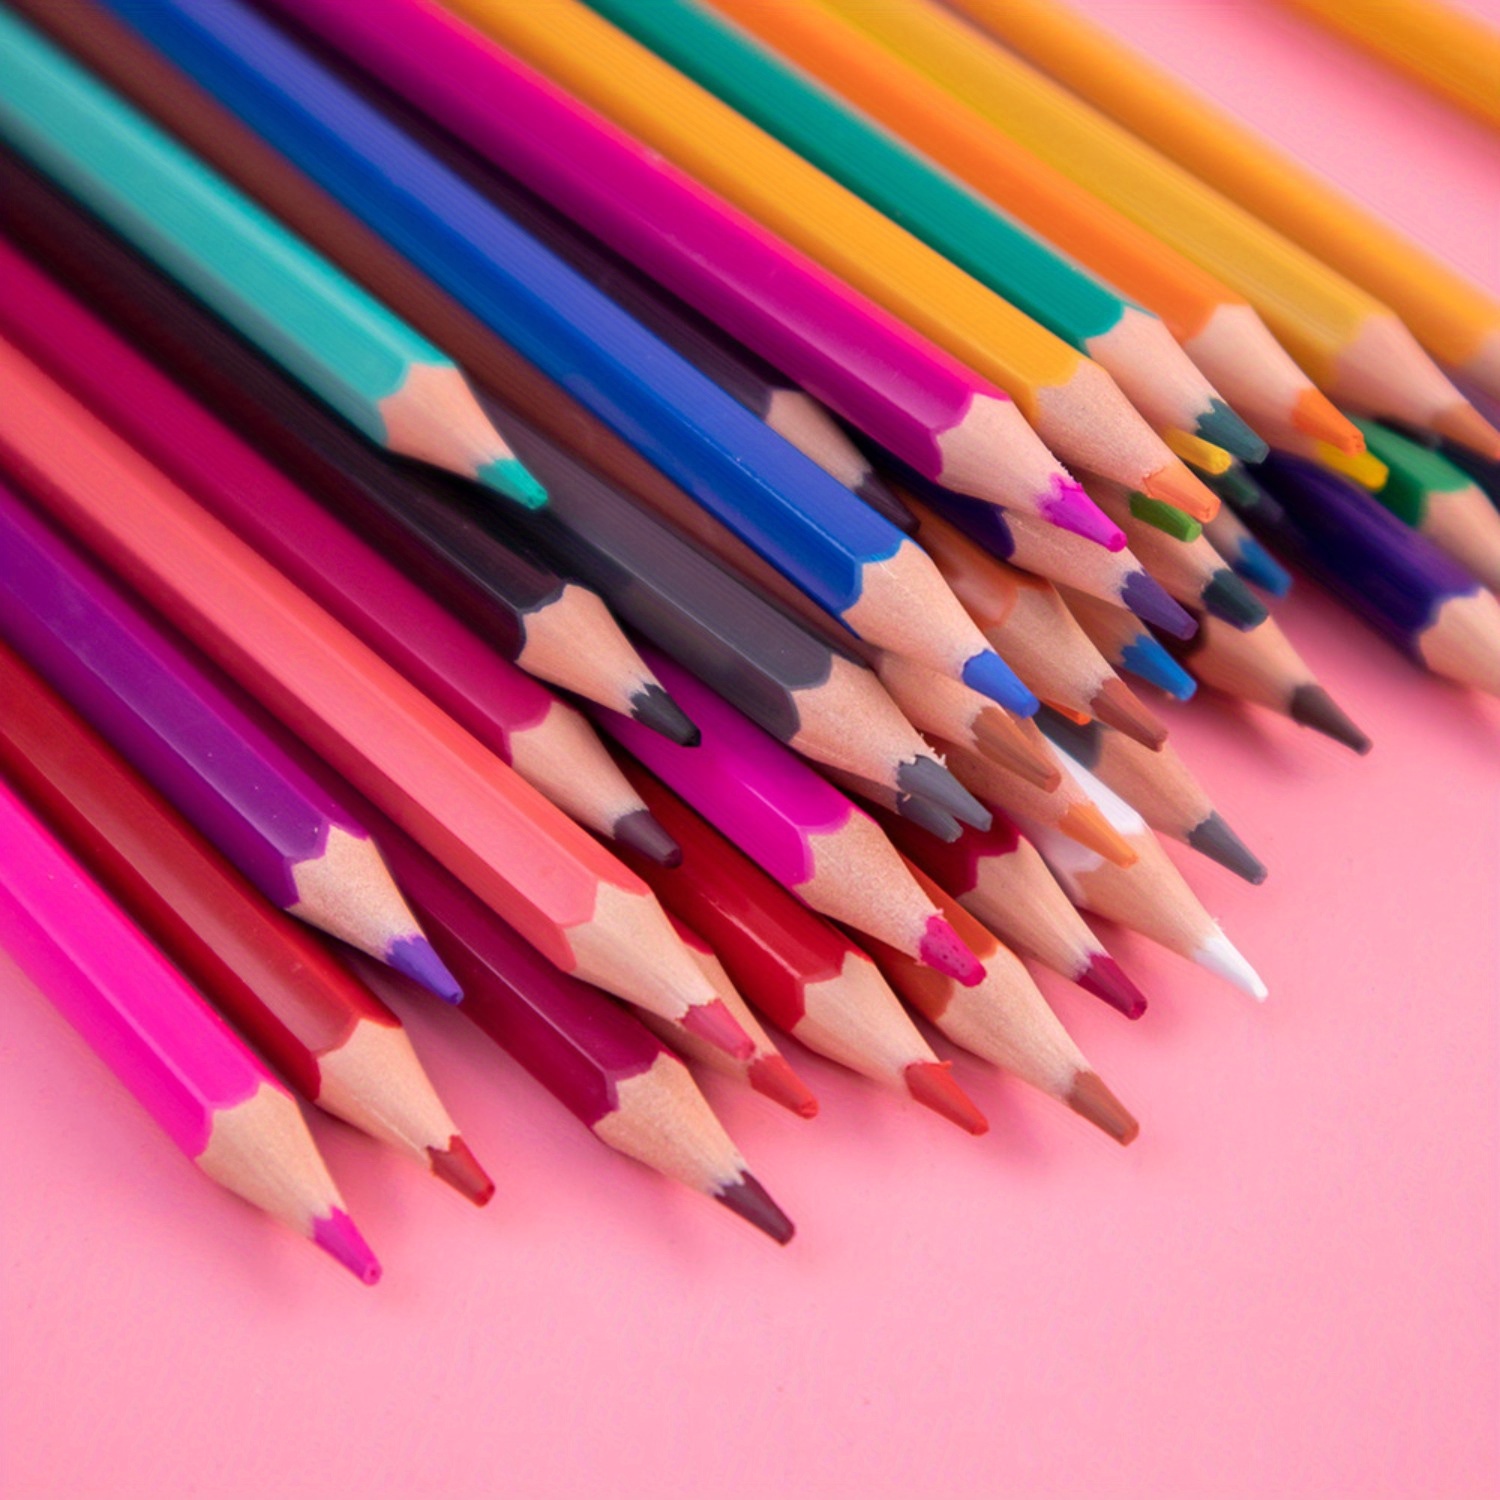 nsxsu 12 matite colorate jumbo per adulti/bambini, matite arcobaleno a  doppia punta, matite multicolori per disegno artistico, colorazione,  schizzi, preaffilate (12) : : Cancelleria e prodotti per ufficio